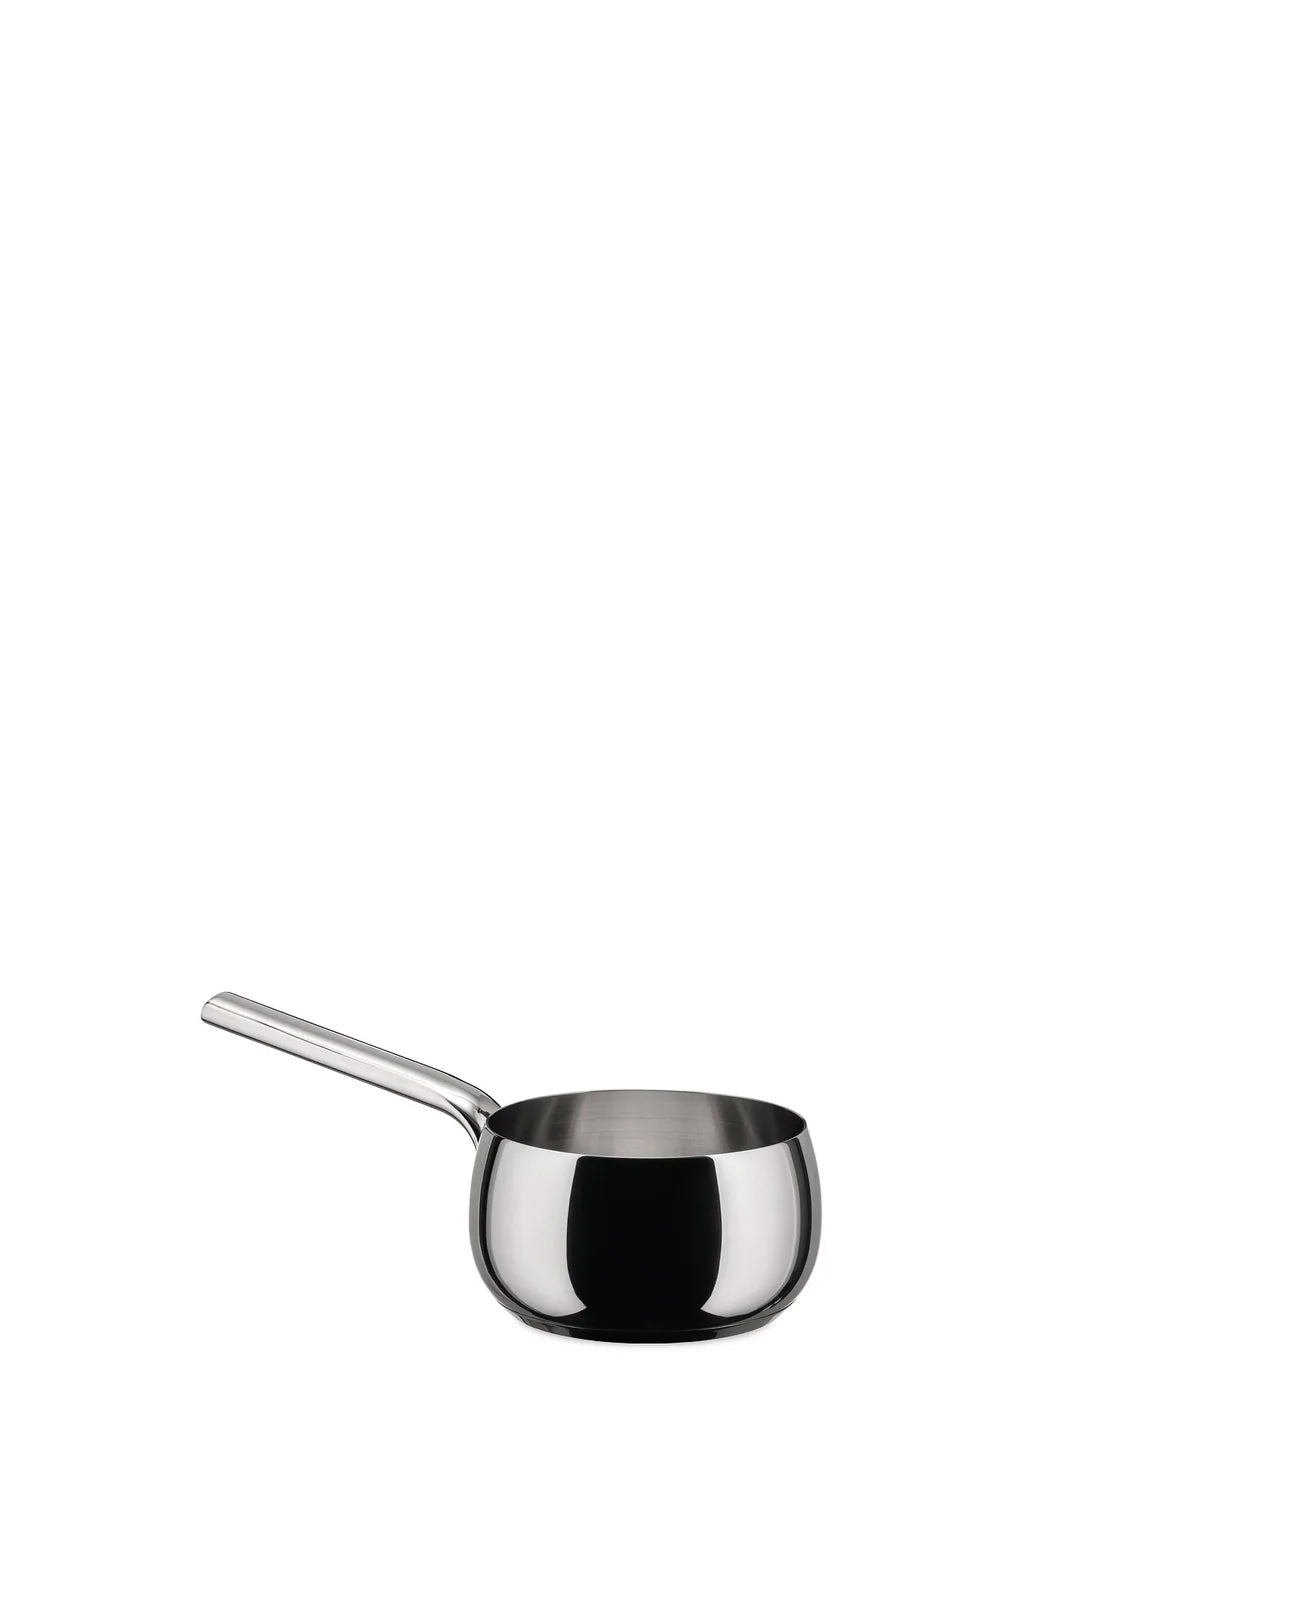 Alessi Mami Long-handled saucepan, 17 cm